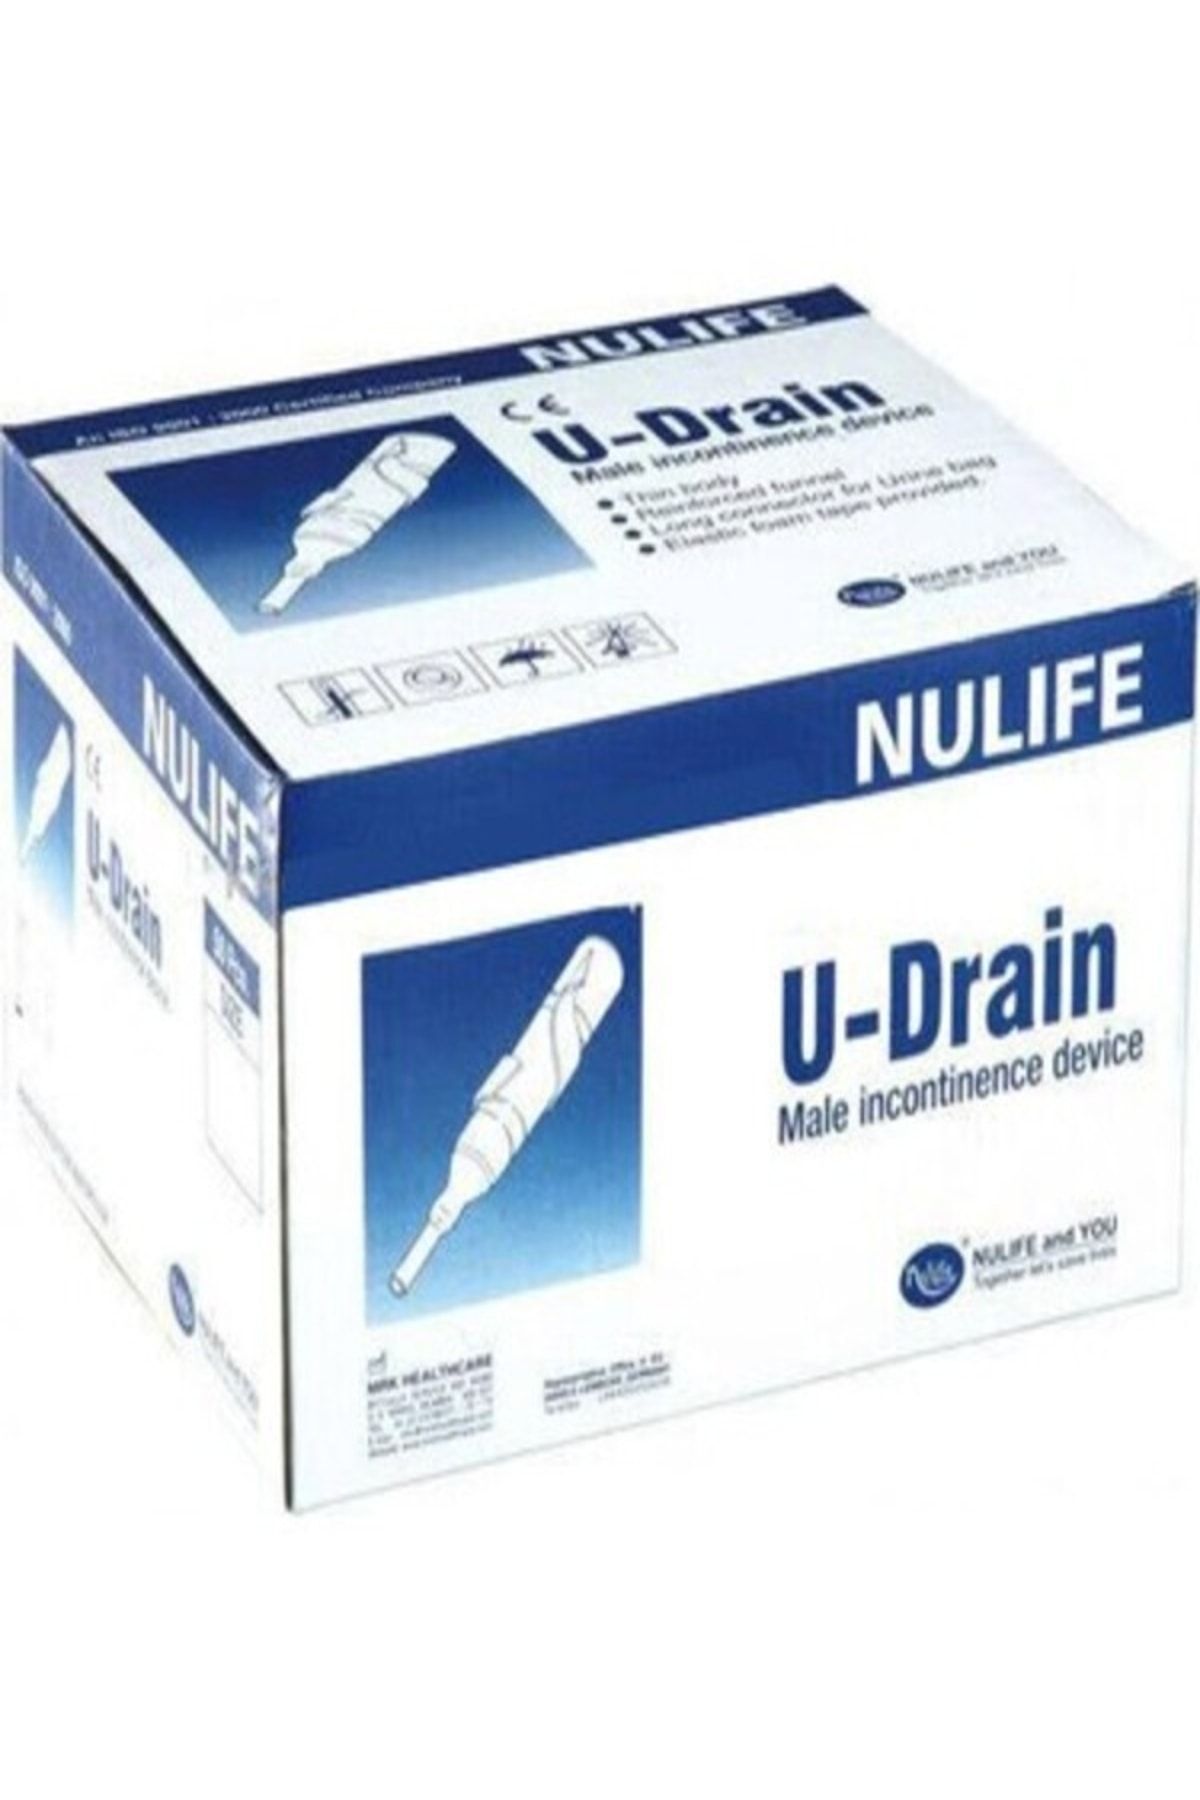 Nulife U-Drain Prezervatif Sonda 30mm - Yapışkan Şeritli - 50 Adet